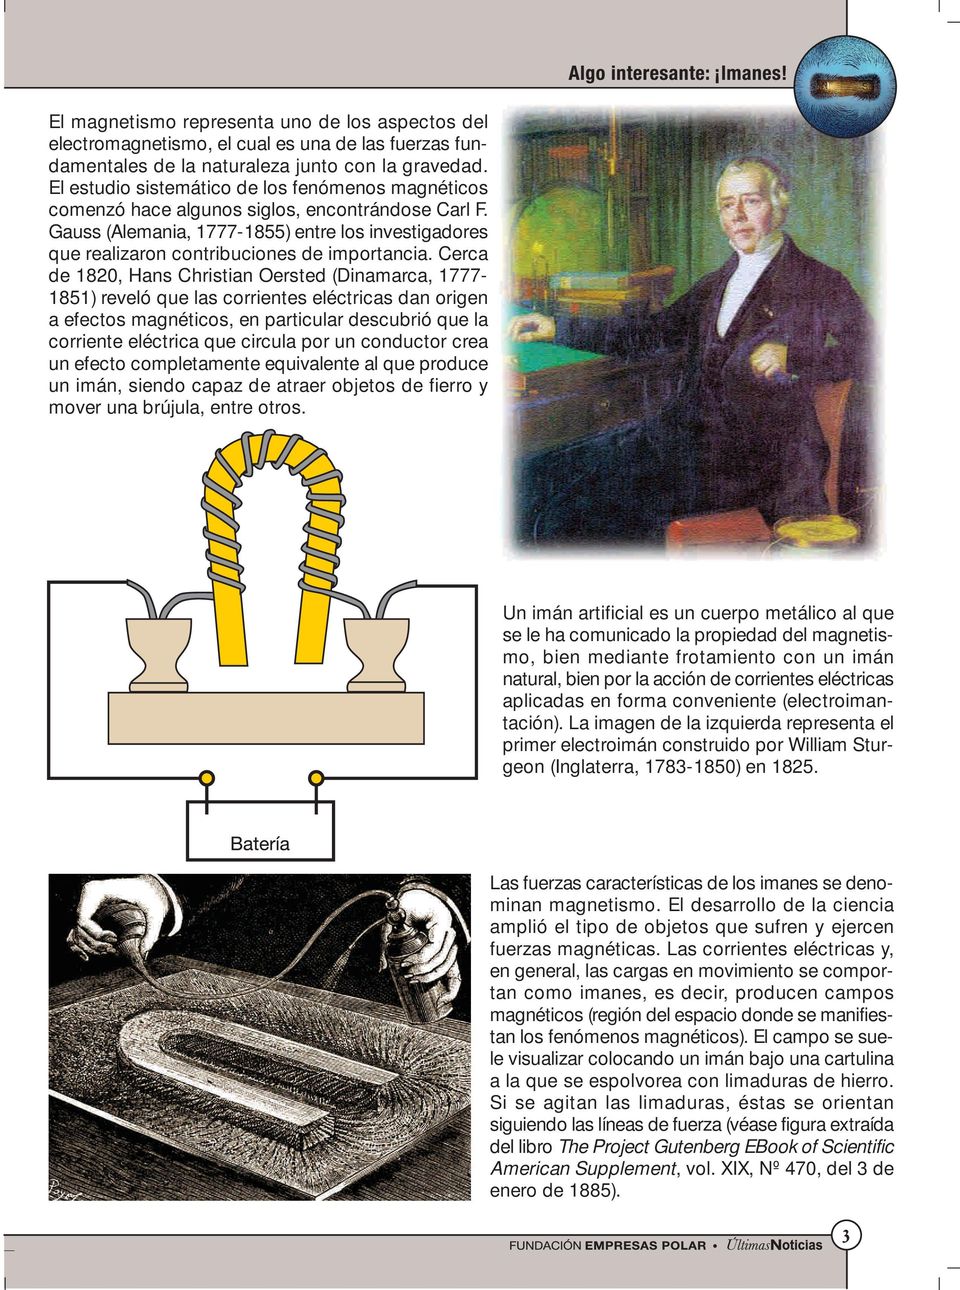 Cerca de 1820, Hans Christian Oersted (Dinamarca, 1777-1851) reveló que las corrientes eléctricas dan origen a efectos magnéticos, en particular descubrió que la corriente eléctrica que circula por